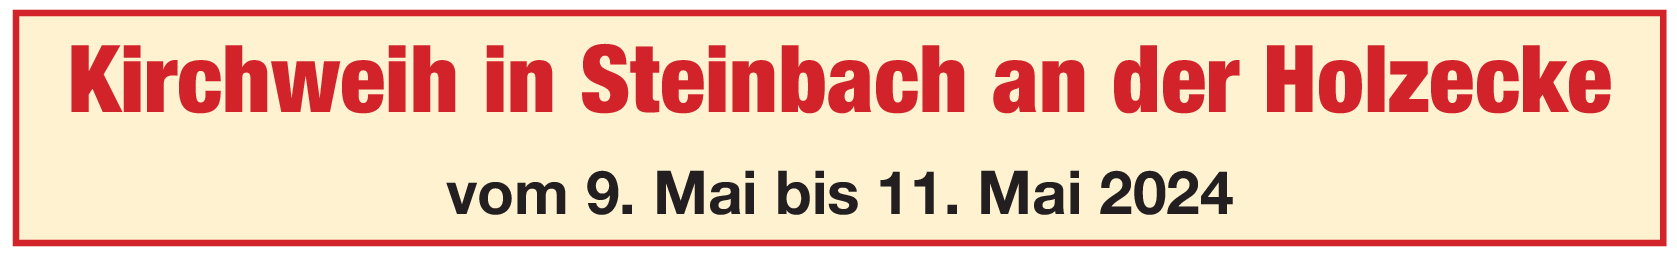 S'is soweit, s'is Kerwazeit in Steinbach an der Holzecke vom 9. Mai bis 11. Mai